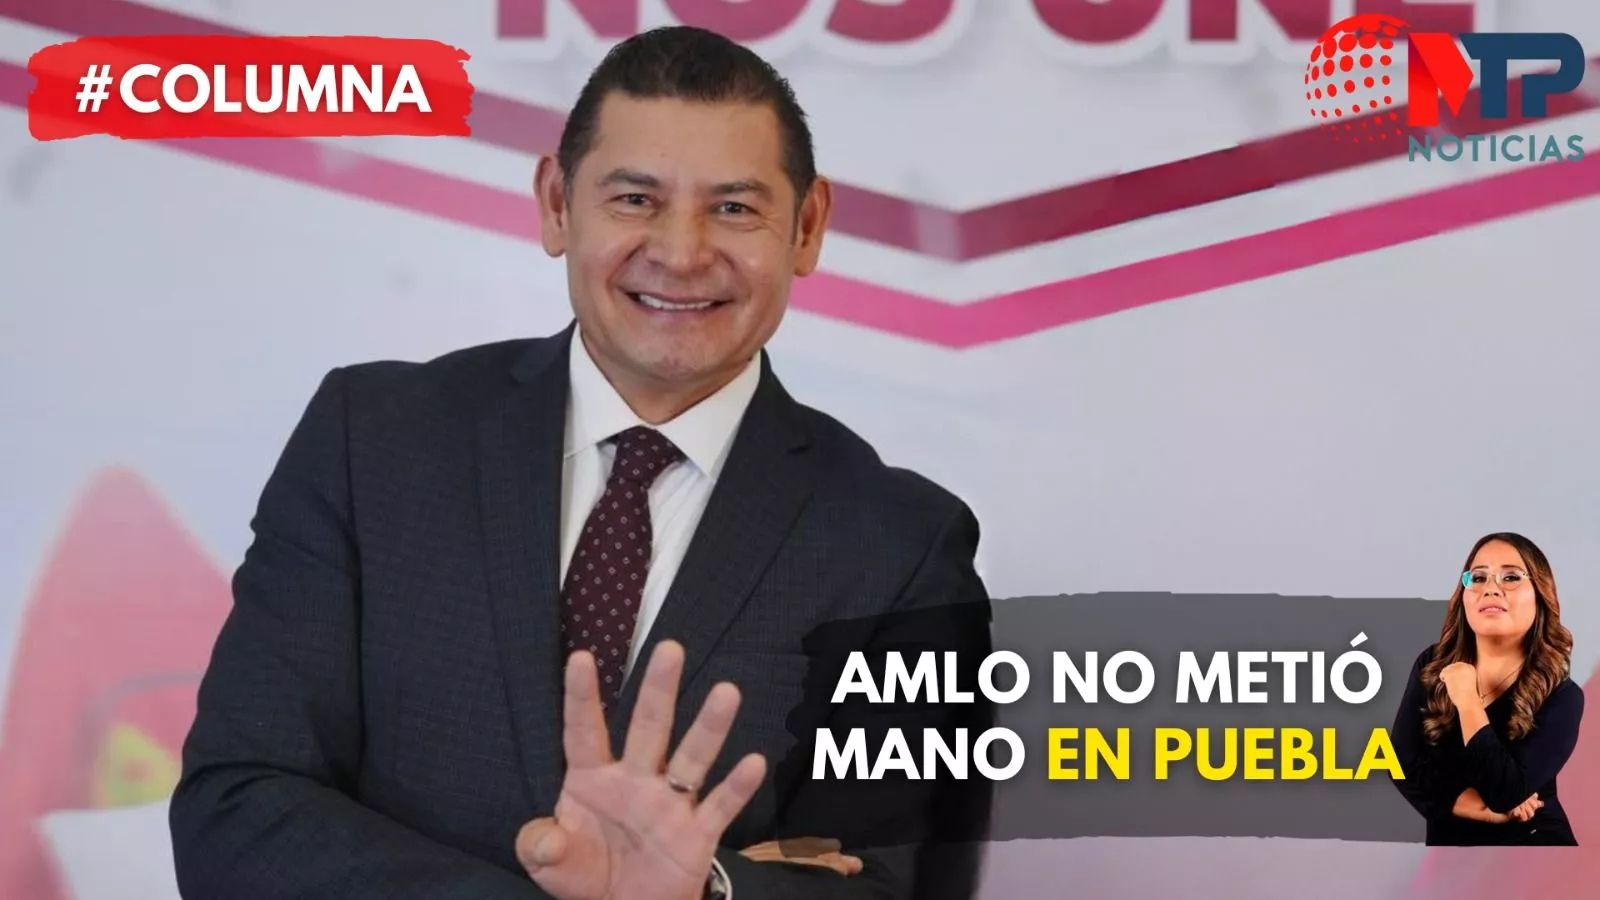 AMLO NO metió mano en Puebla | Al Polígrafo